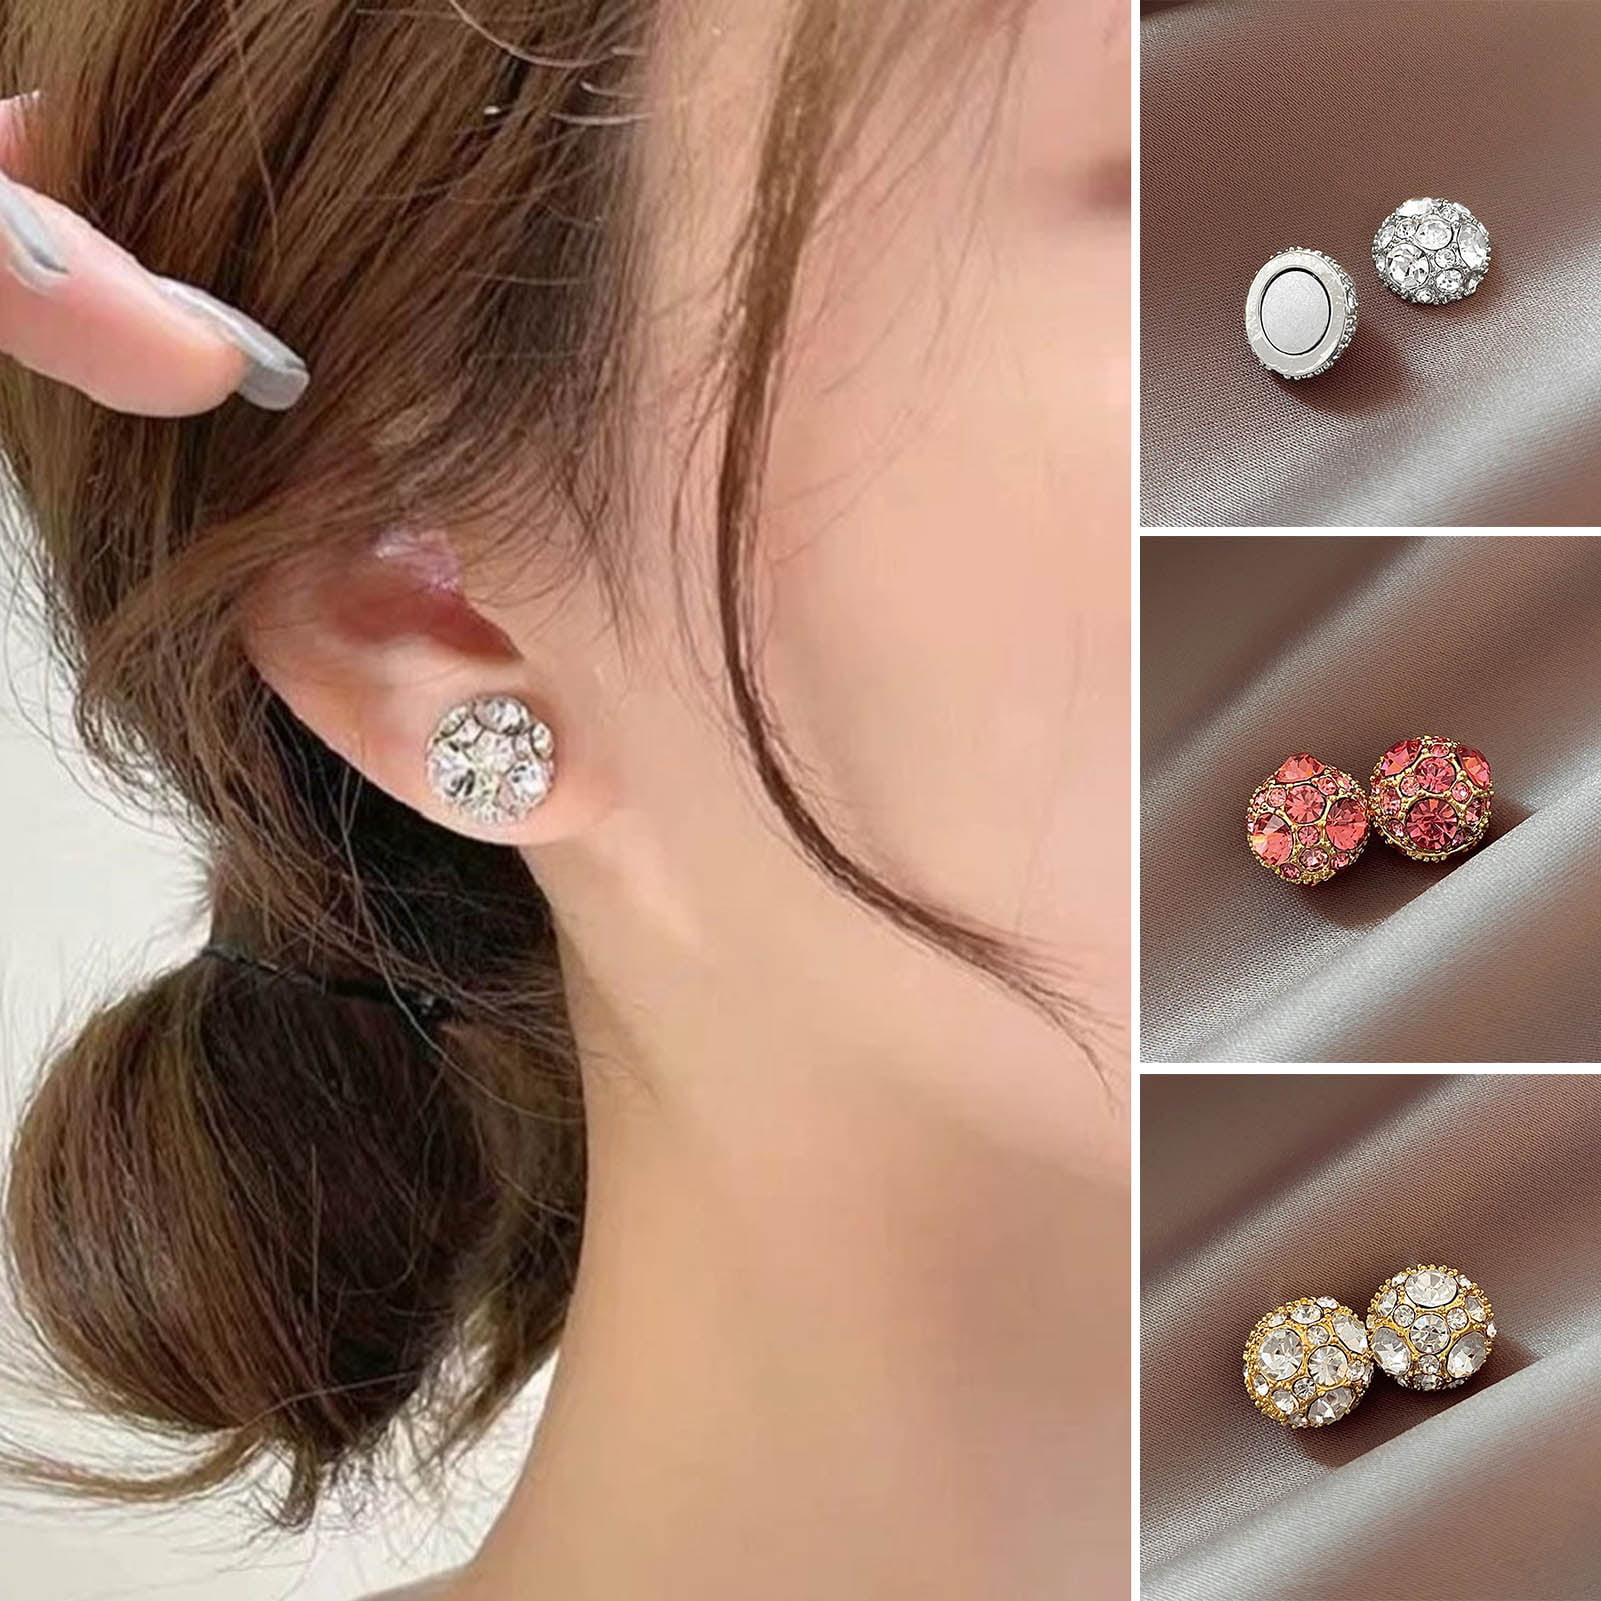 Erika Jayne Exposed For Leaking FAKE NEWS Amid Battle Over $750k Diamond  Earrings